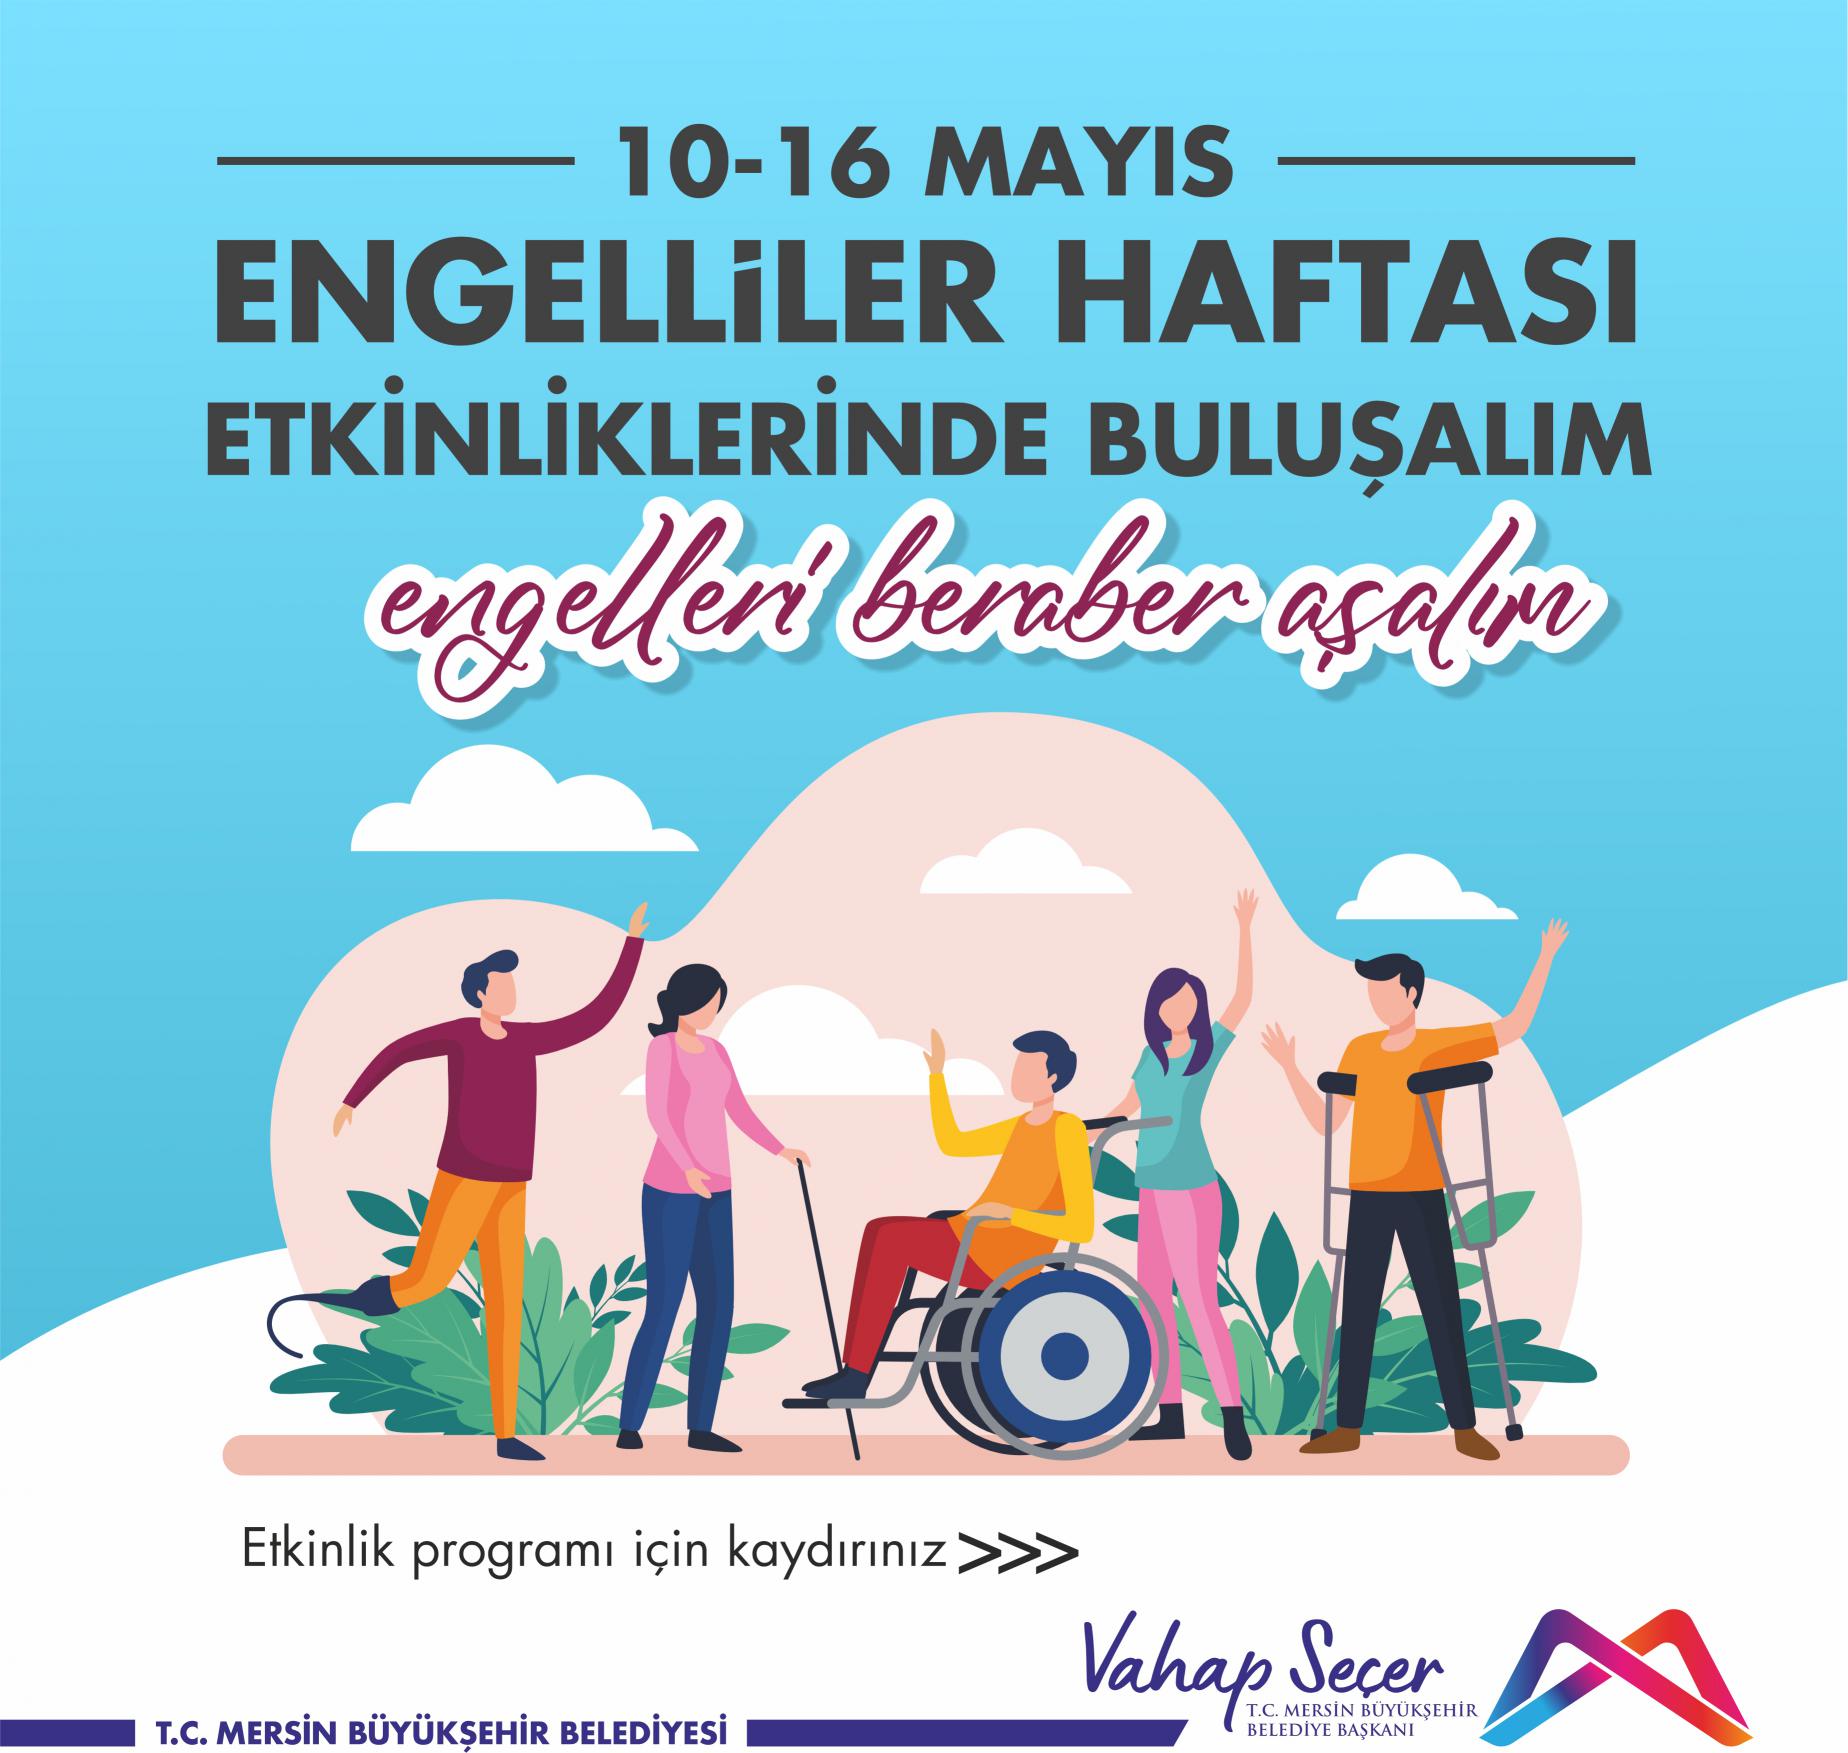 10-16 Mayıs Engelliler Haftası Etkinliklerinde buluşalım.